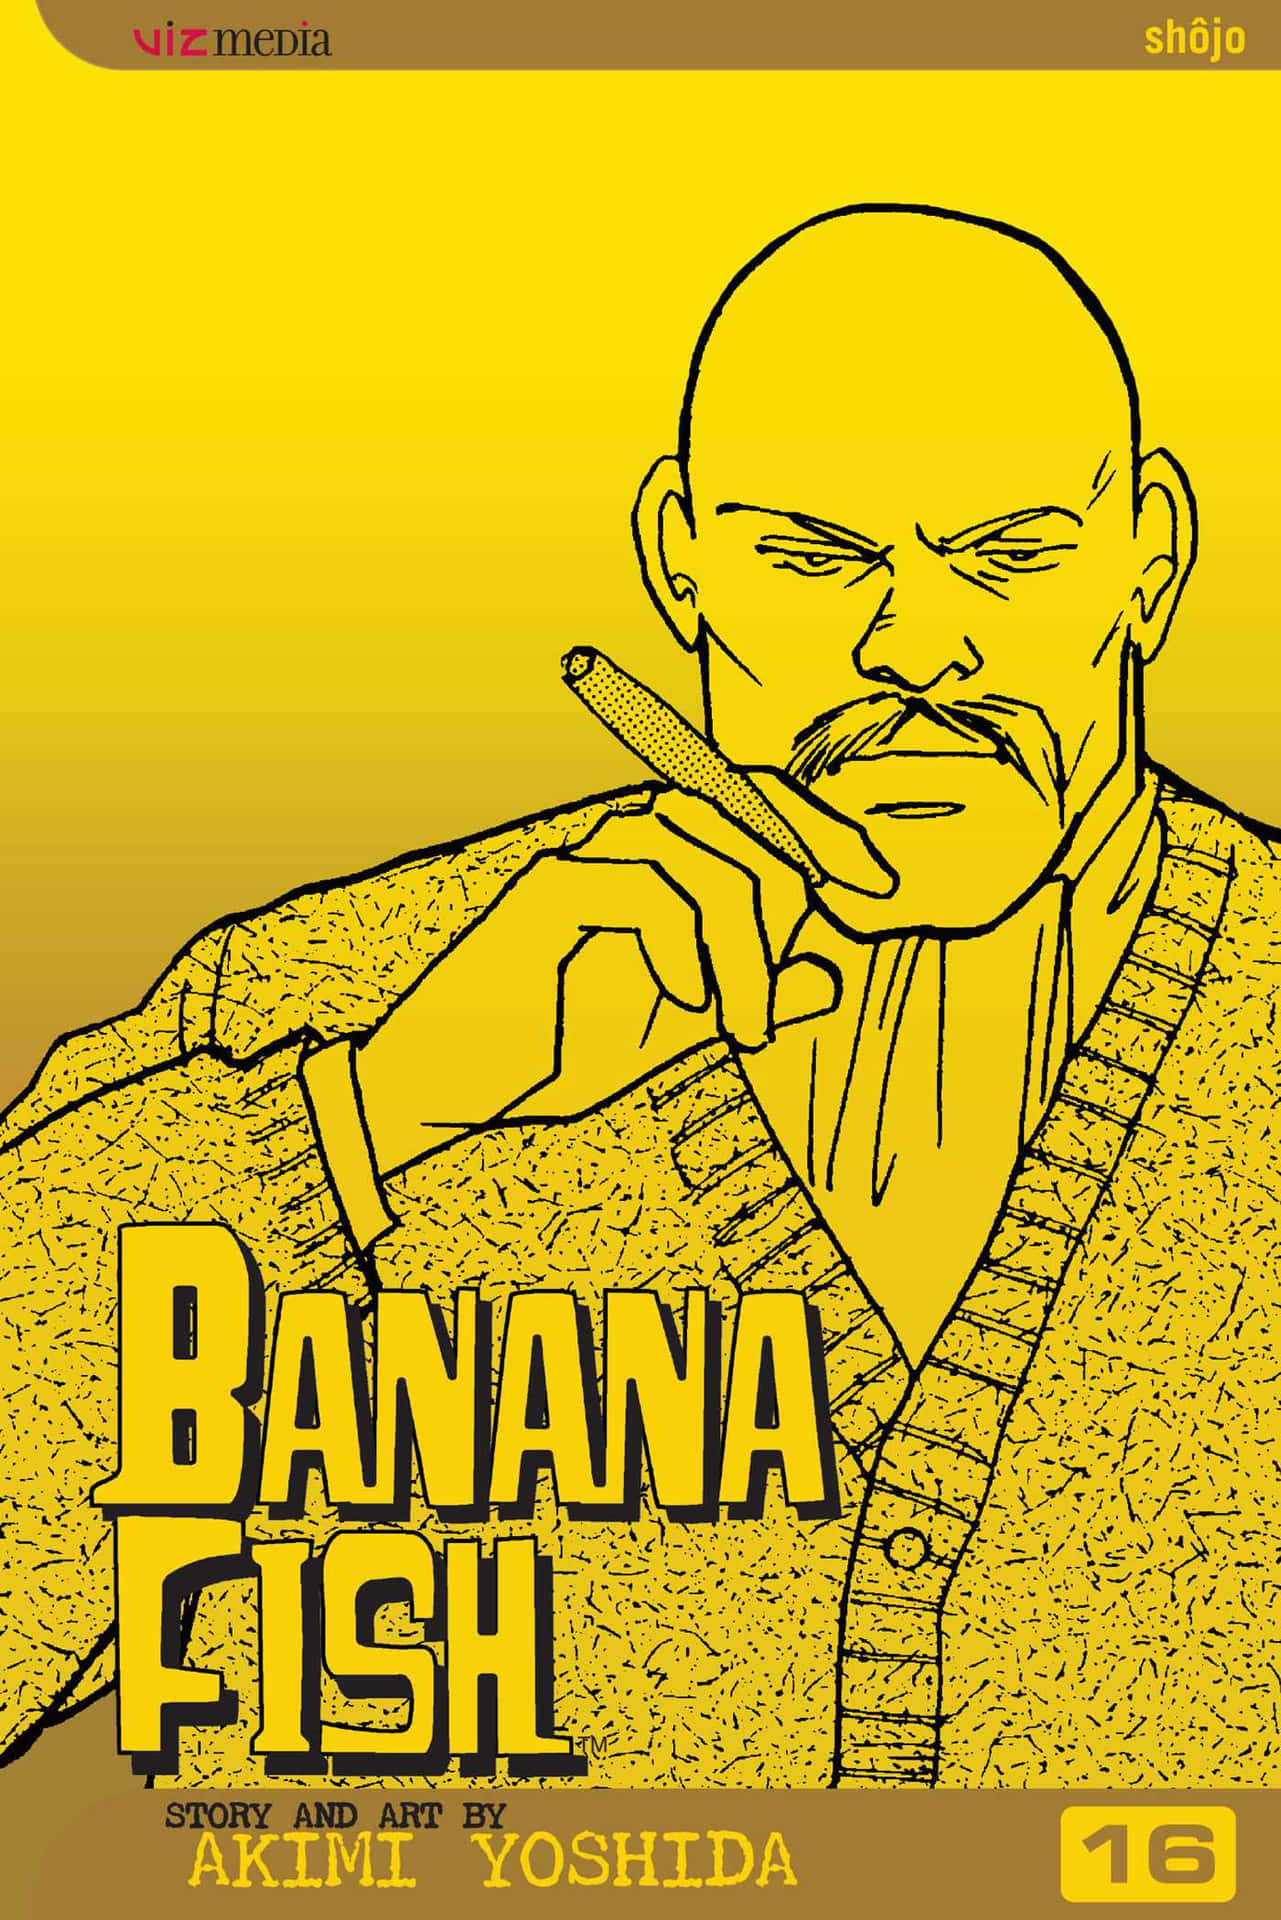 Dueprotagonisti Della Serie Anime Banana Fish Brillano In Una Posa Affascinante.